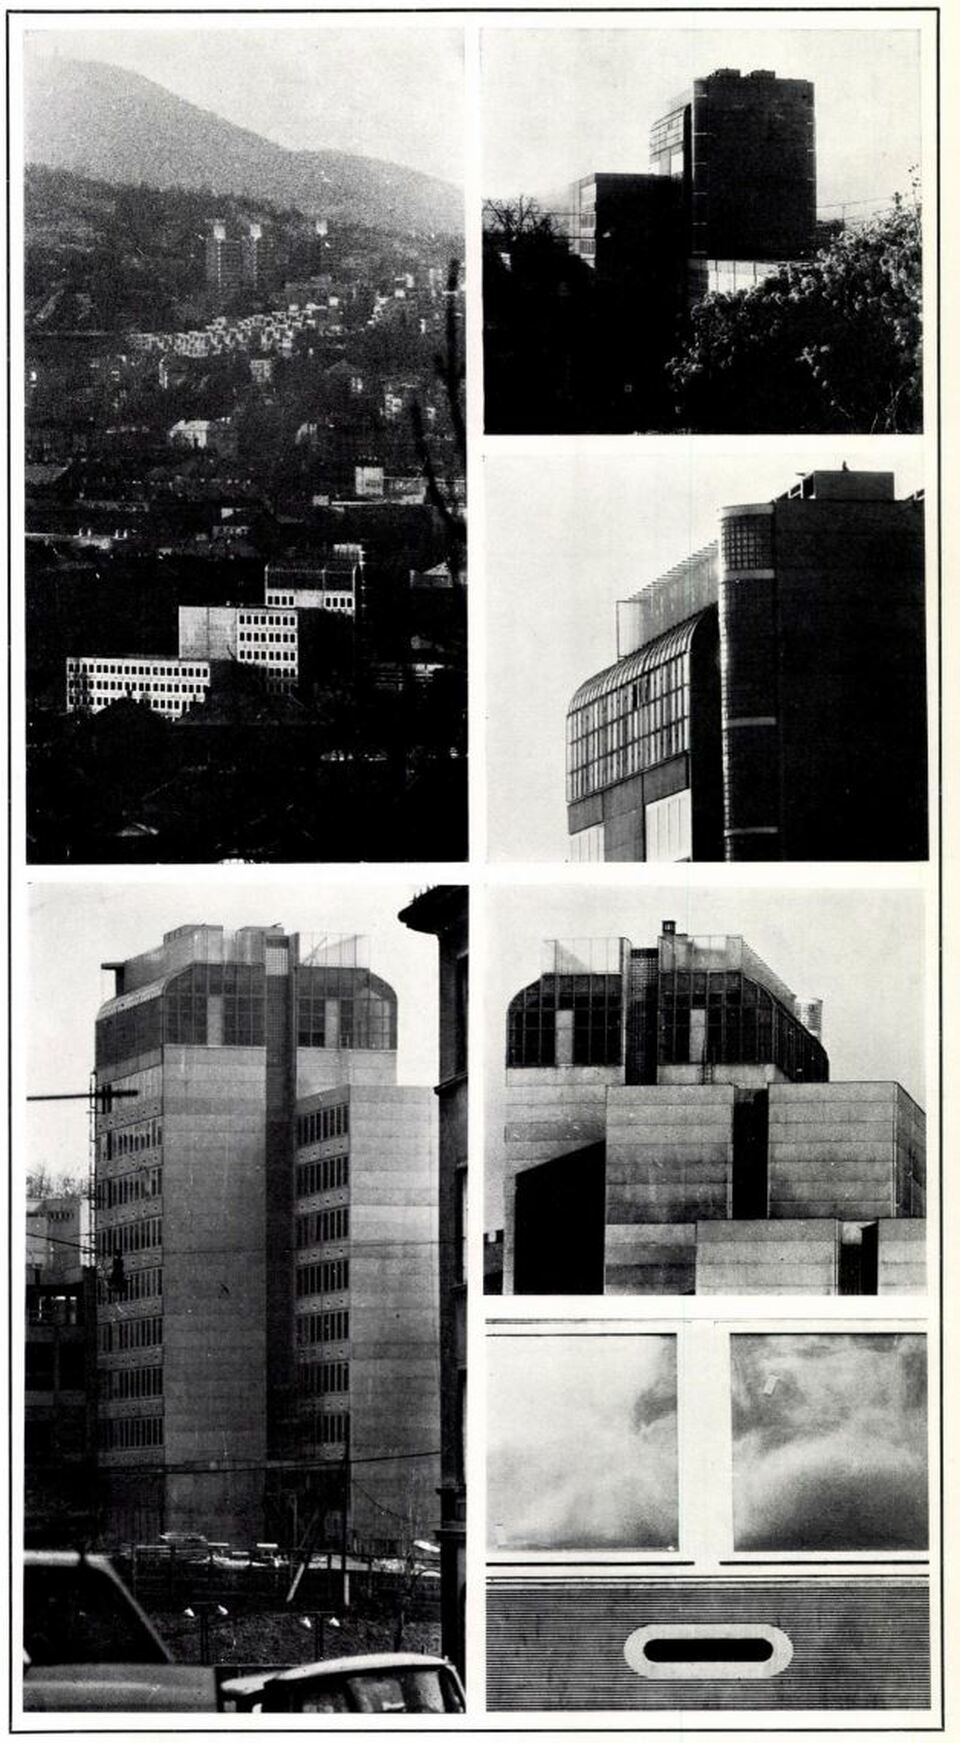 Külkereskedelmi Szolgáltatóház, Budapest, Mészáros utca, 1976 k. Gereben Gábor (Közti) terve a Mesteriskola III. ciklusából.